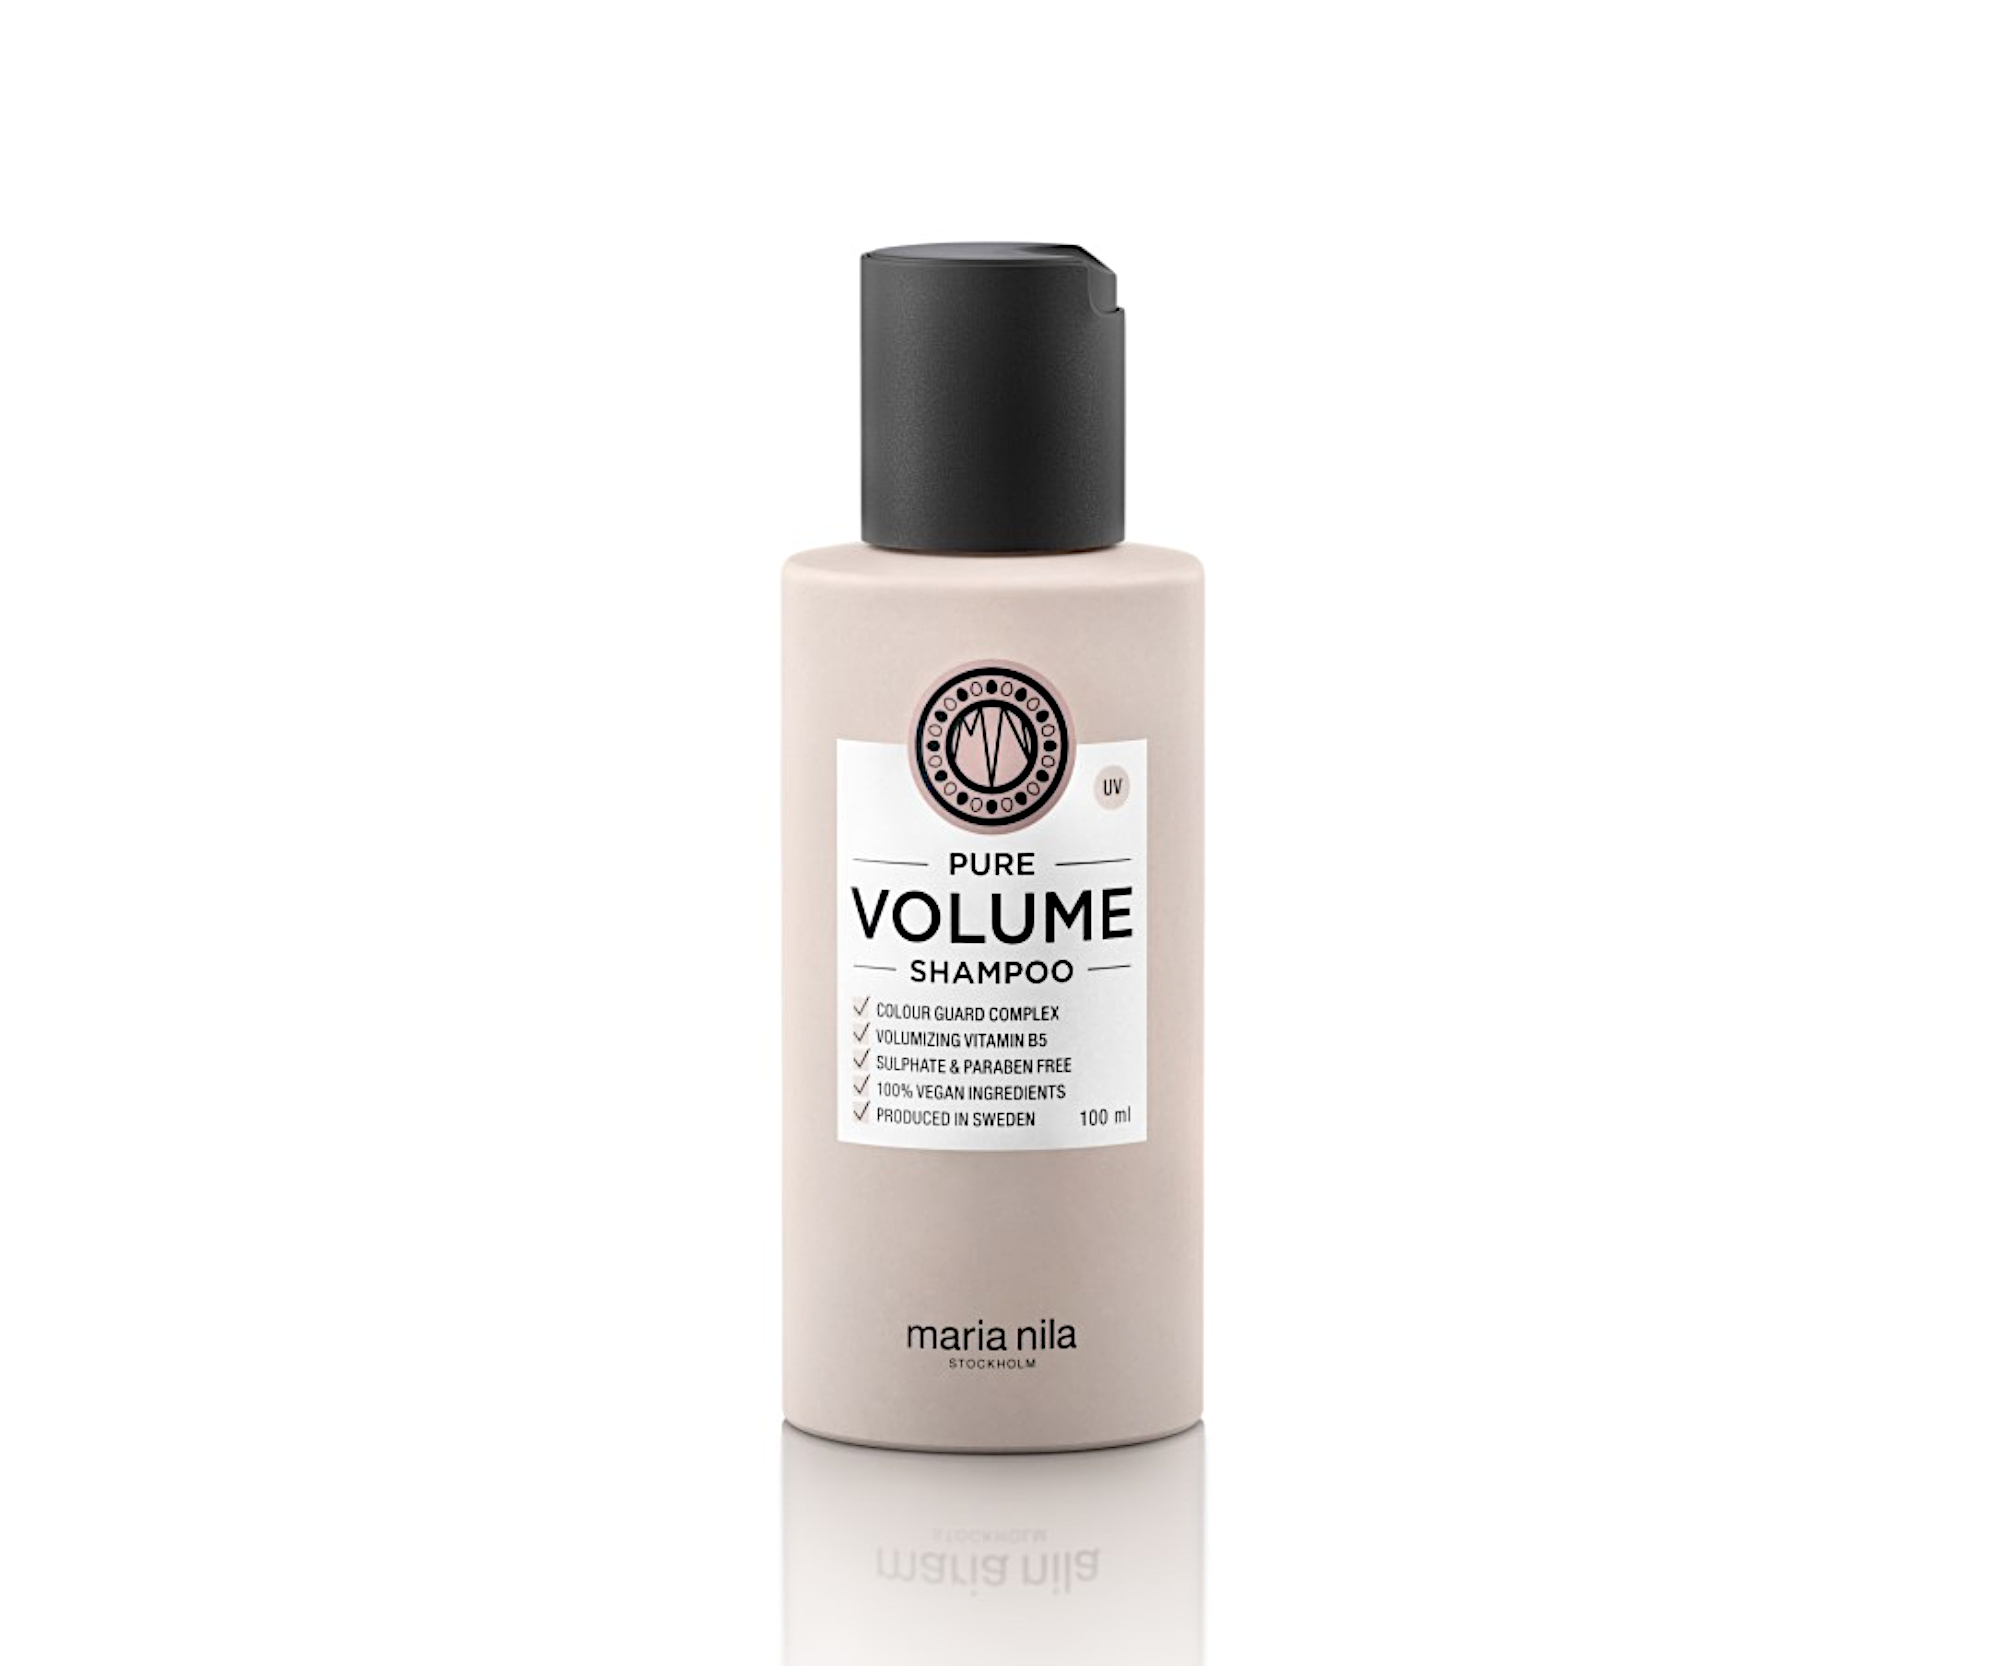 Šampon pro objem jemných vlasů Maria Nila Pure Volume Shampoo - 100 ml (NF02-3615) + dárek zdarma